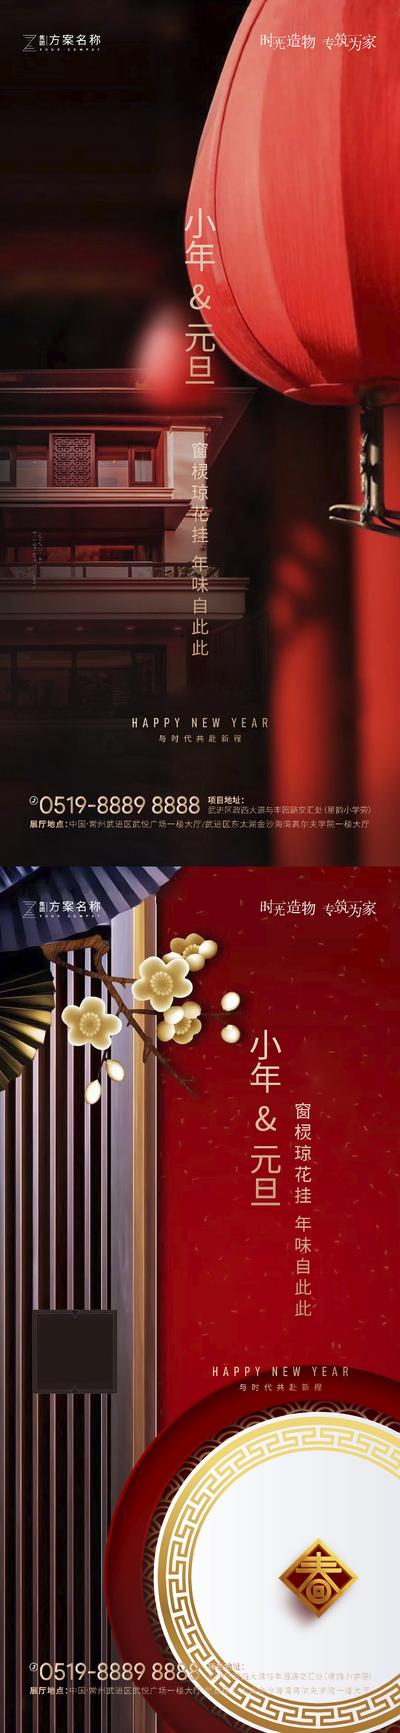 南门网 海报 公历节日 中国传统节日  元旦 小年  红色 灯笼 系列